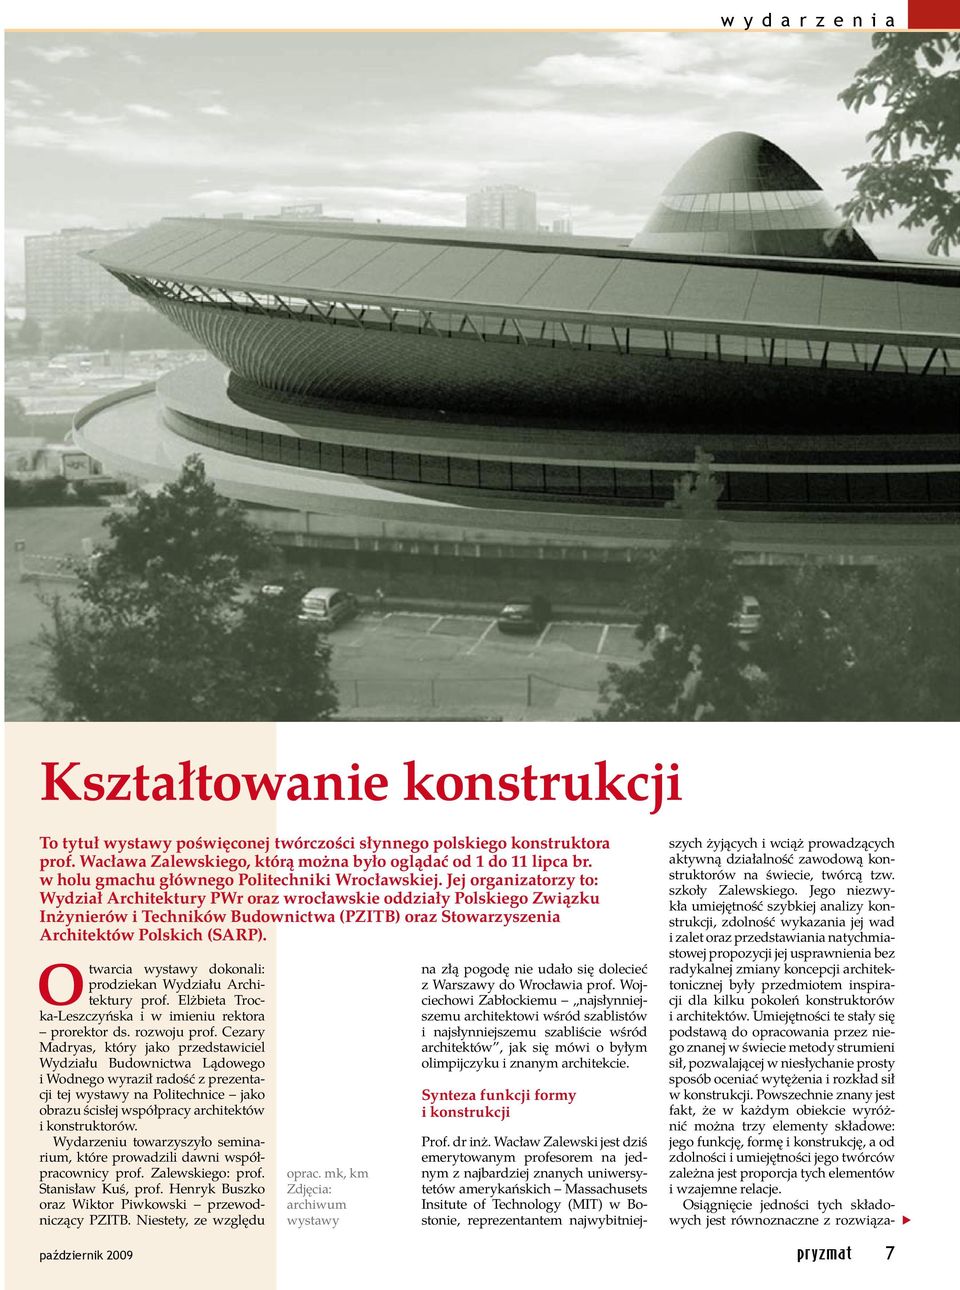 Jej organizatorzy to: Wydział Architektury PWr oraz wrocławskie oddziały Polskiego Związku Inżynierów i Techników Budownictwa (PZITB) oraz Stowarzyszenia Architektów Polskich (SARP).